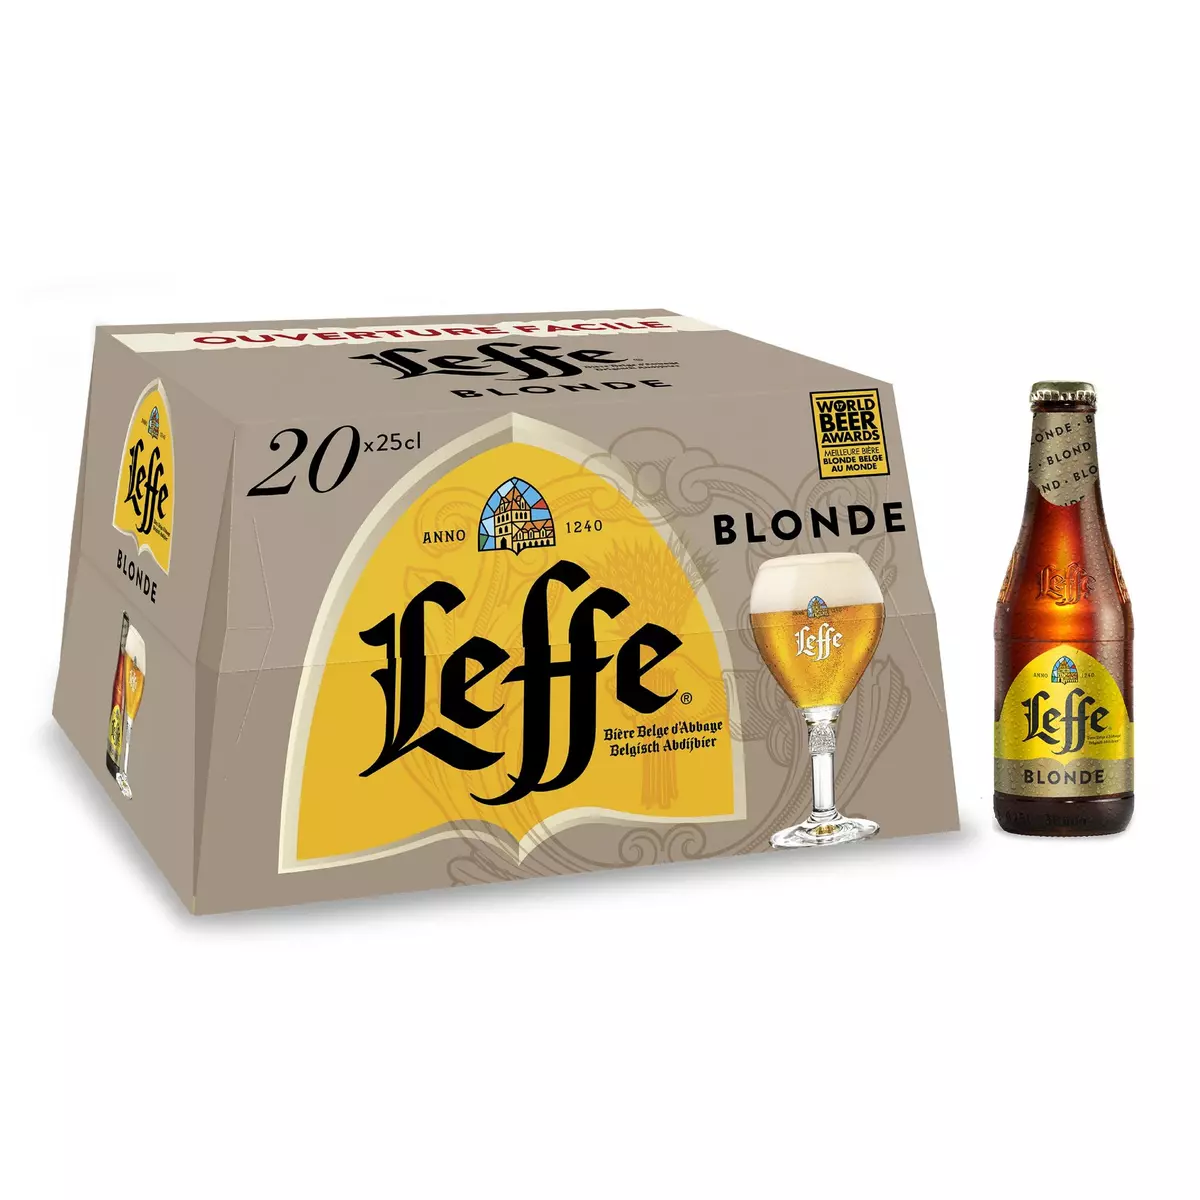 LEFFE Bière blonde 6,6% bouteilles 20x25cl